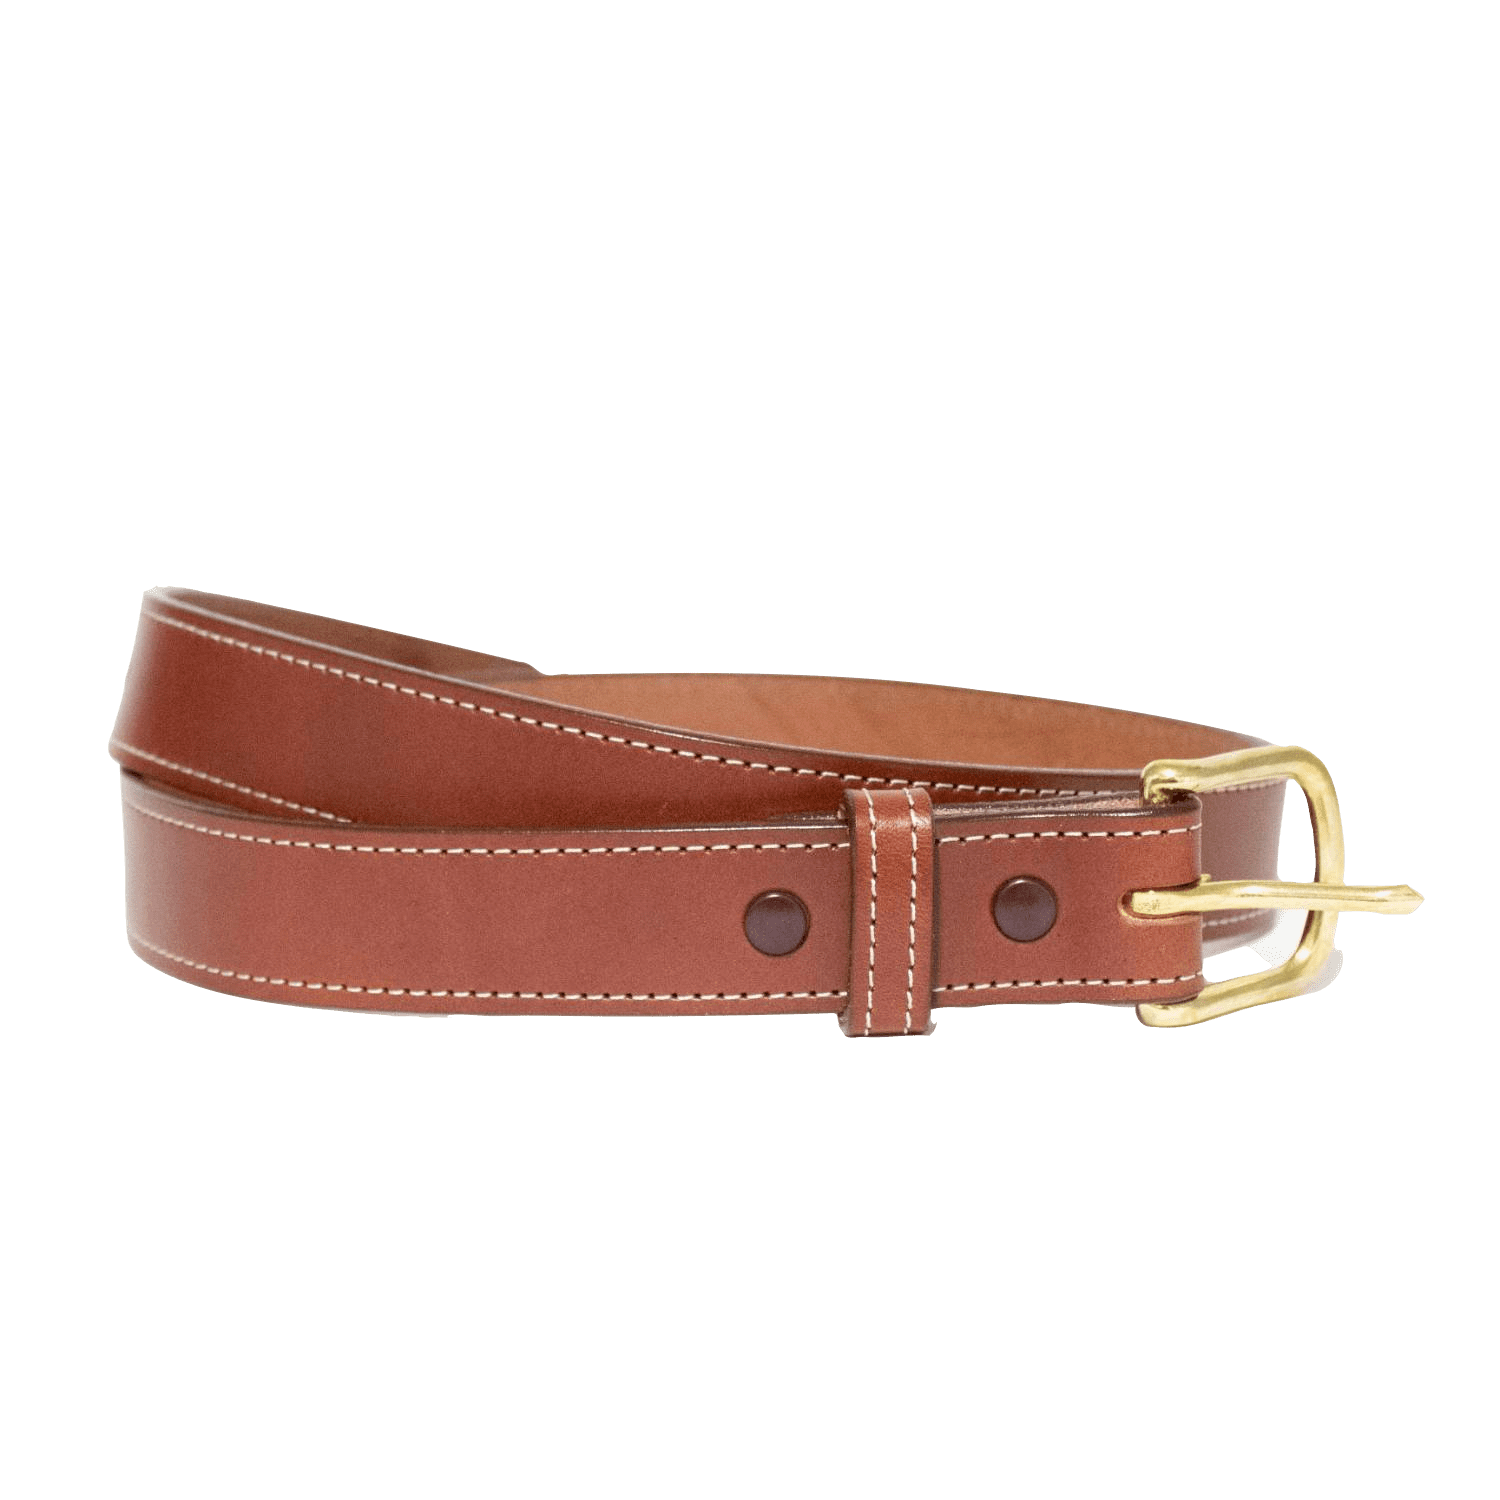 Penns Gold Mens Leather Work Belt Uniform Belt 1 3/4 Wide